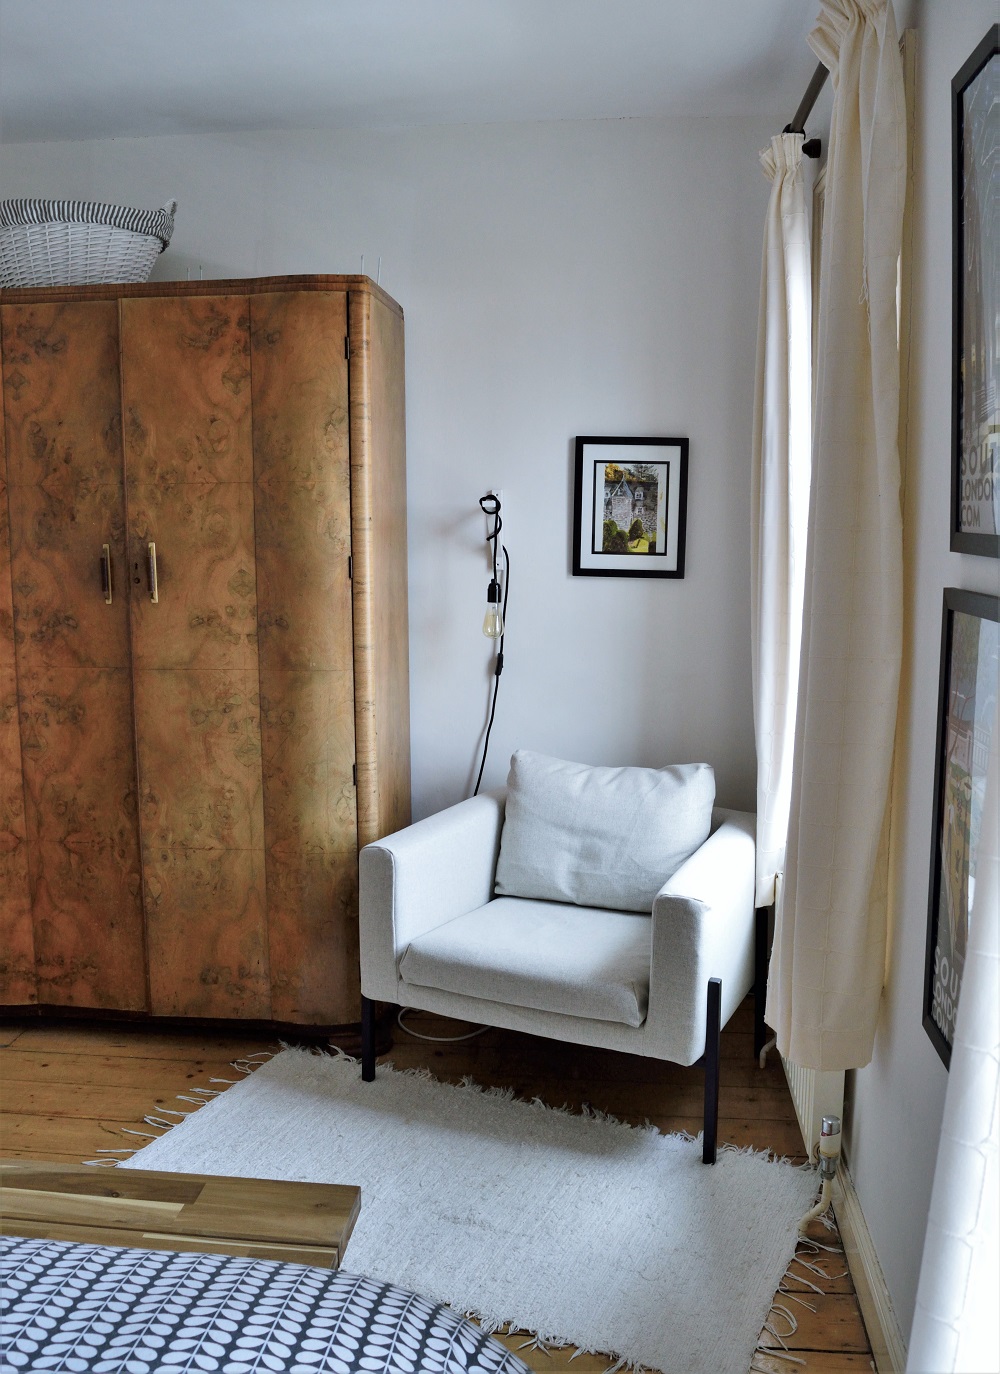 Ikea Koarp armchair next to wardrobe